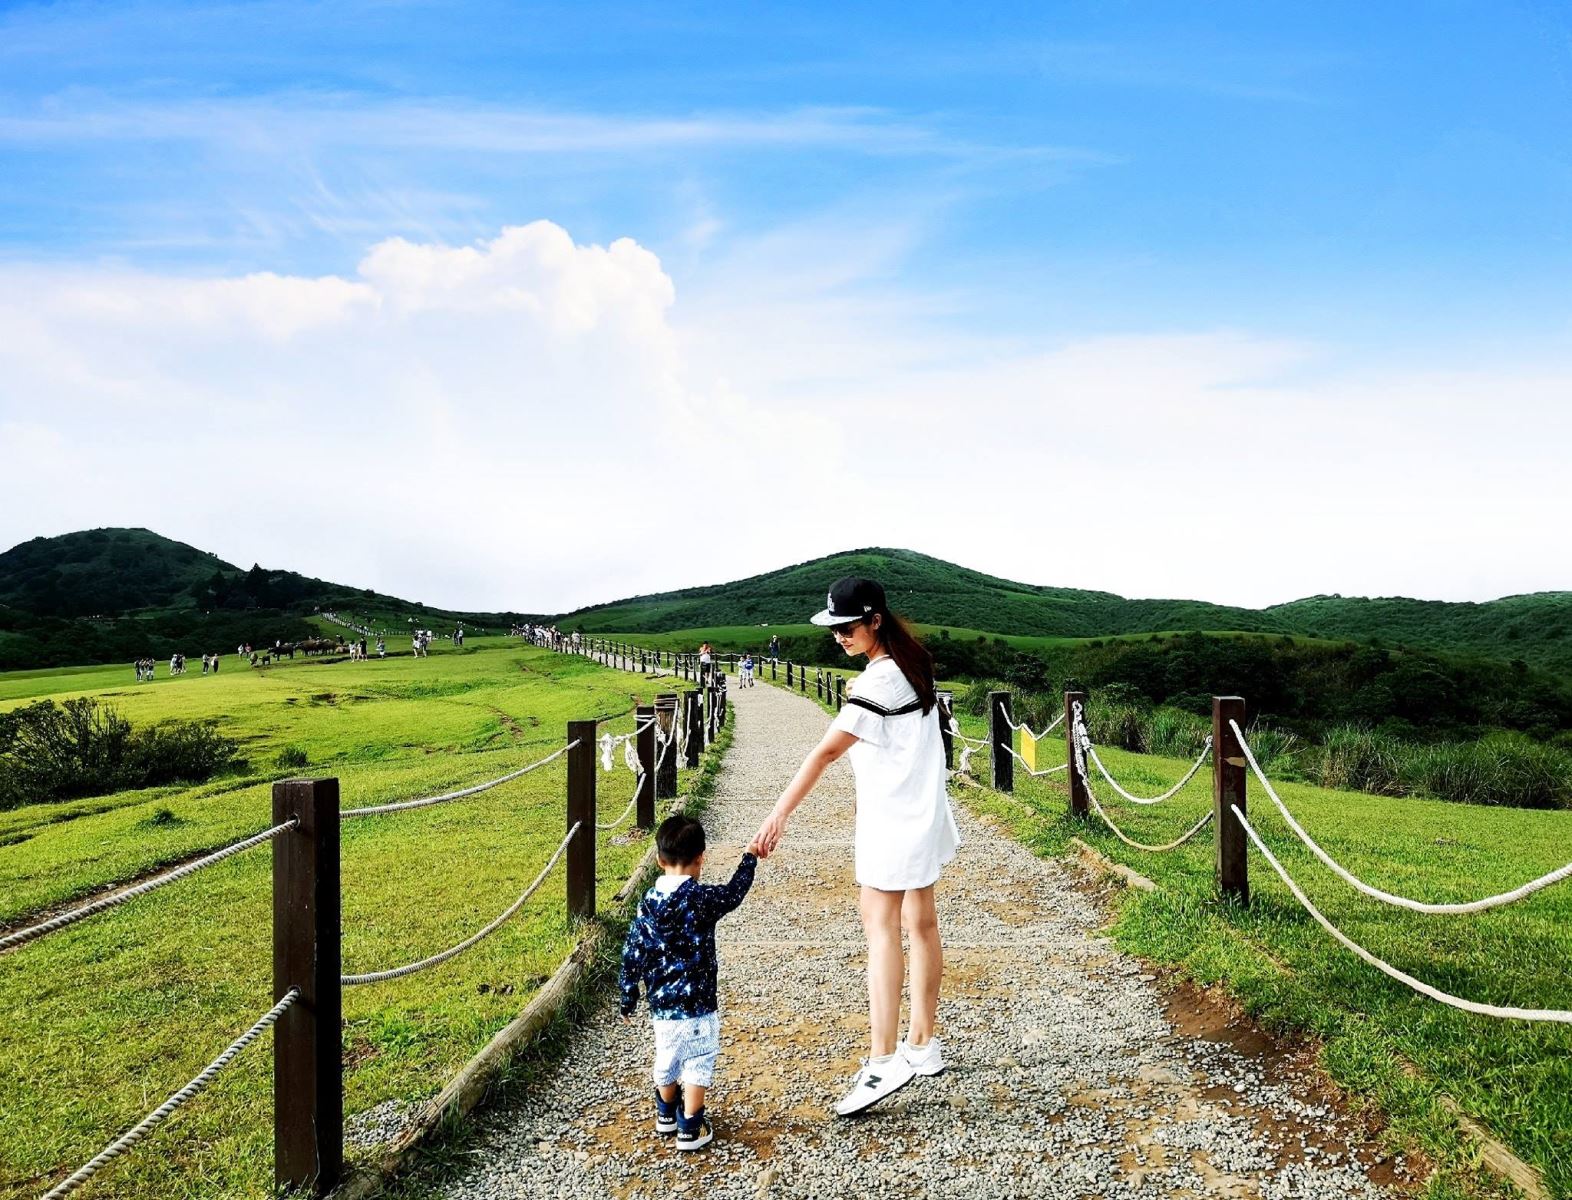 Núi Dương Minh Sơn là nơi rất thích hợp để đi dã ngoại cùng gia đình và bạn bè